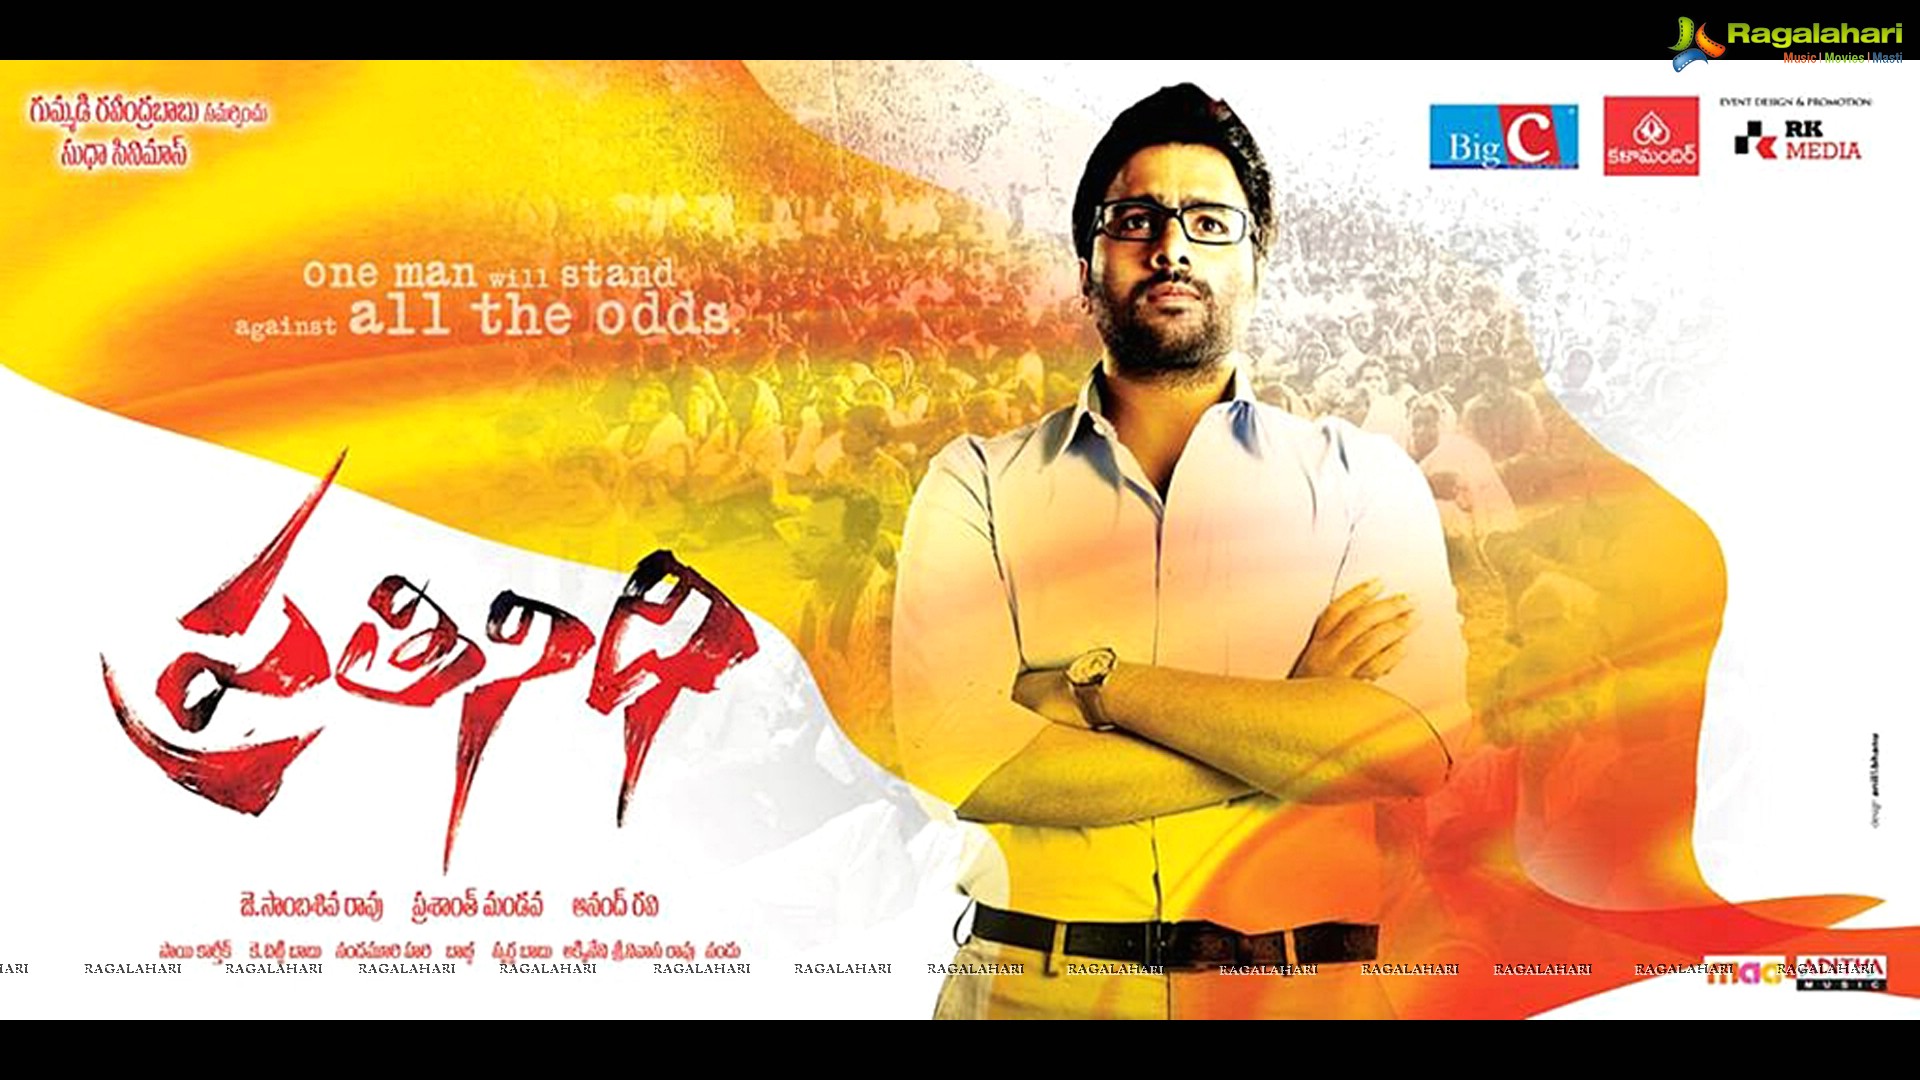 Julayi 2012 Telugu Movie English Subtitles Free Download